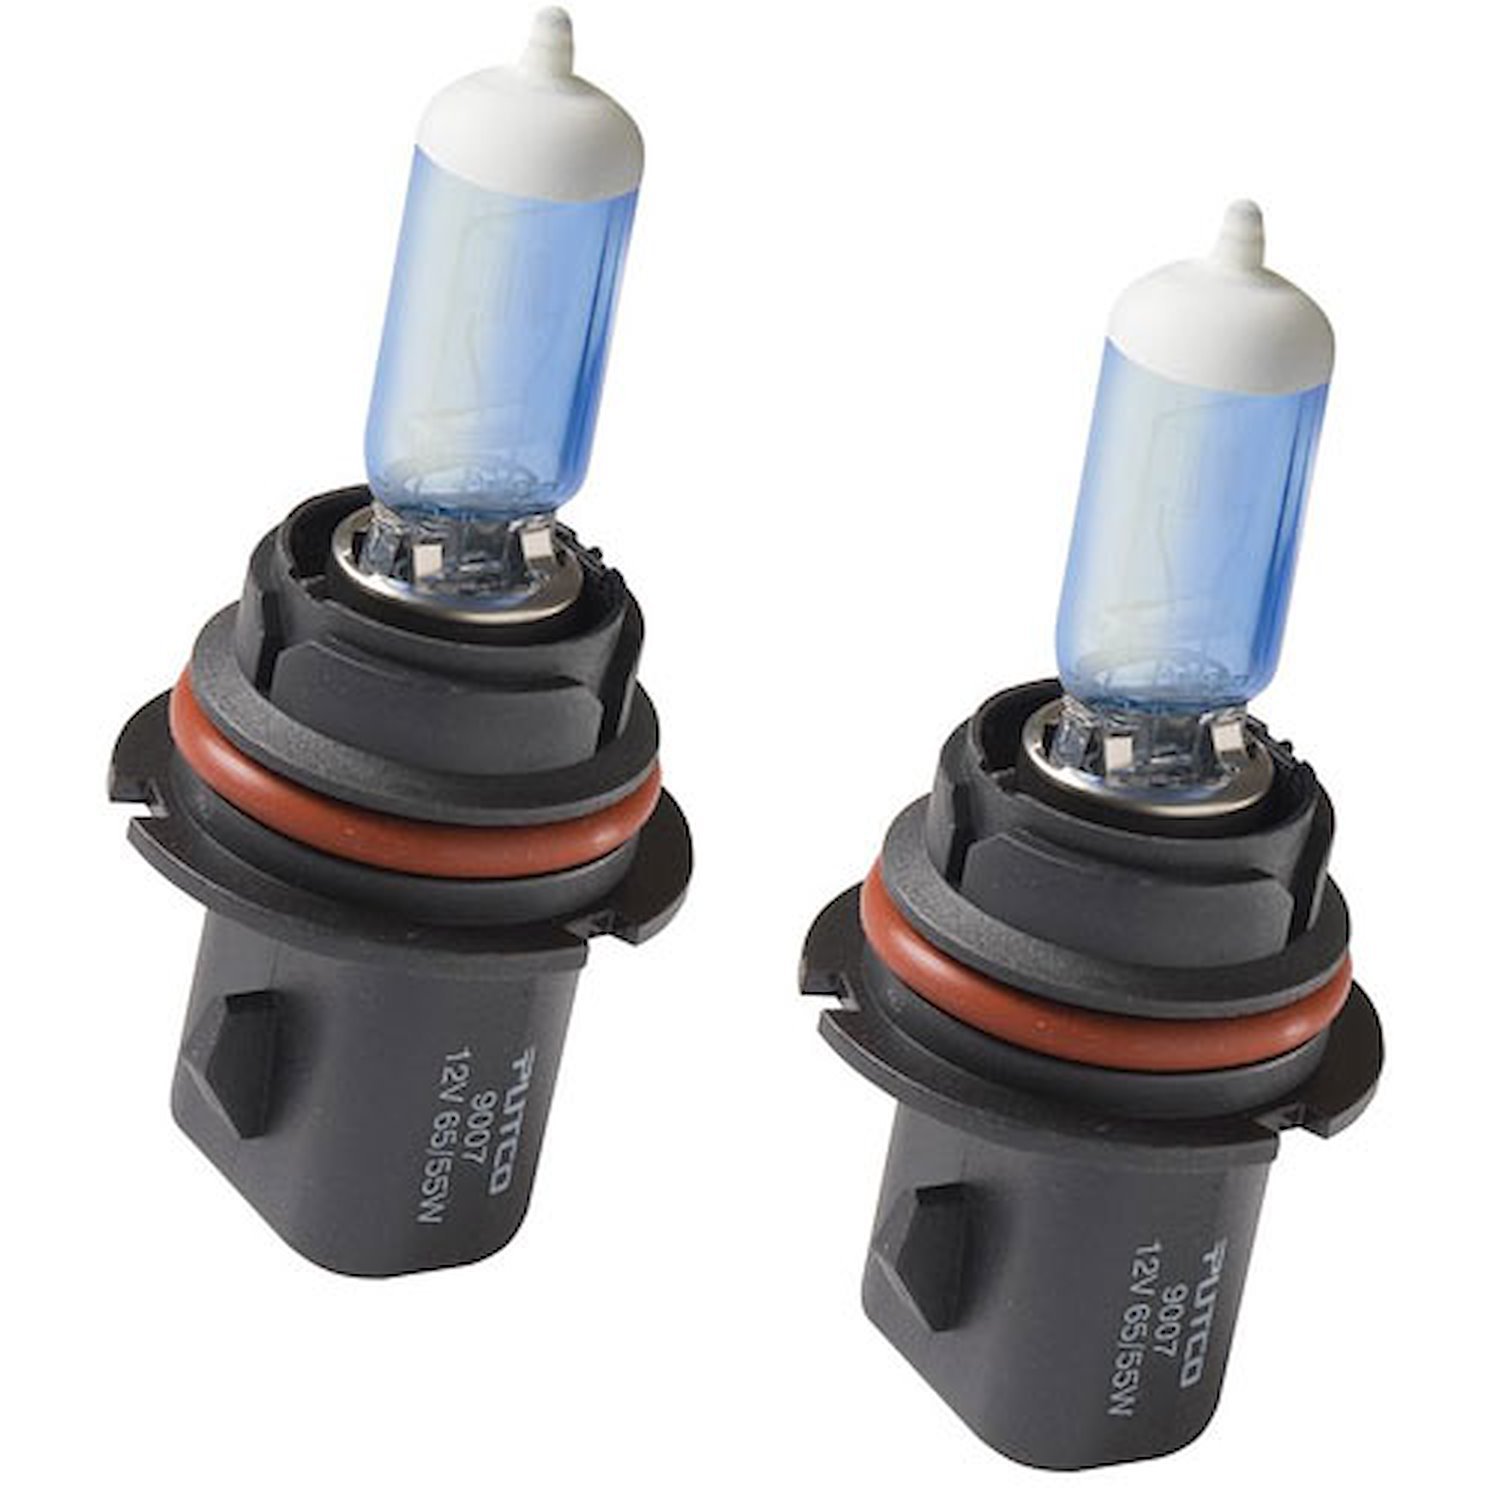 Halogen Headlight Bulbs 9007 Bulb Replacement